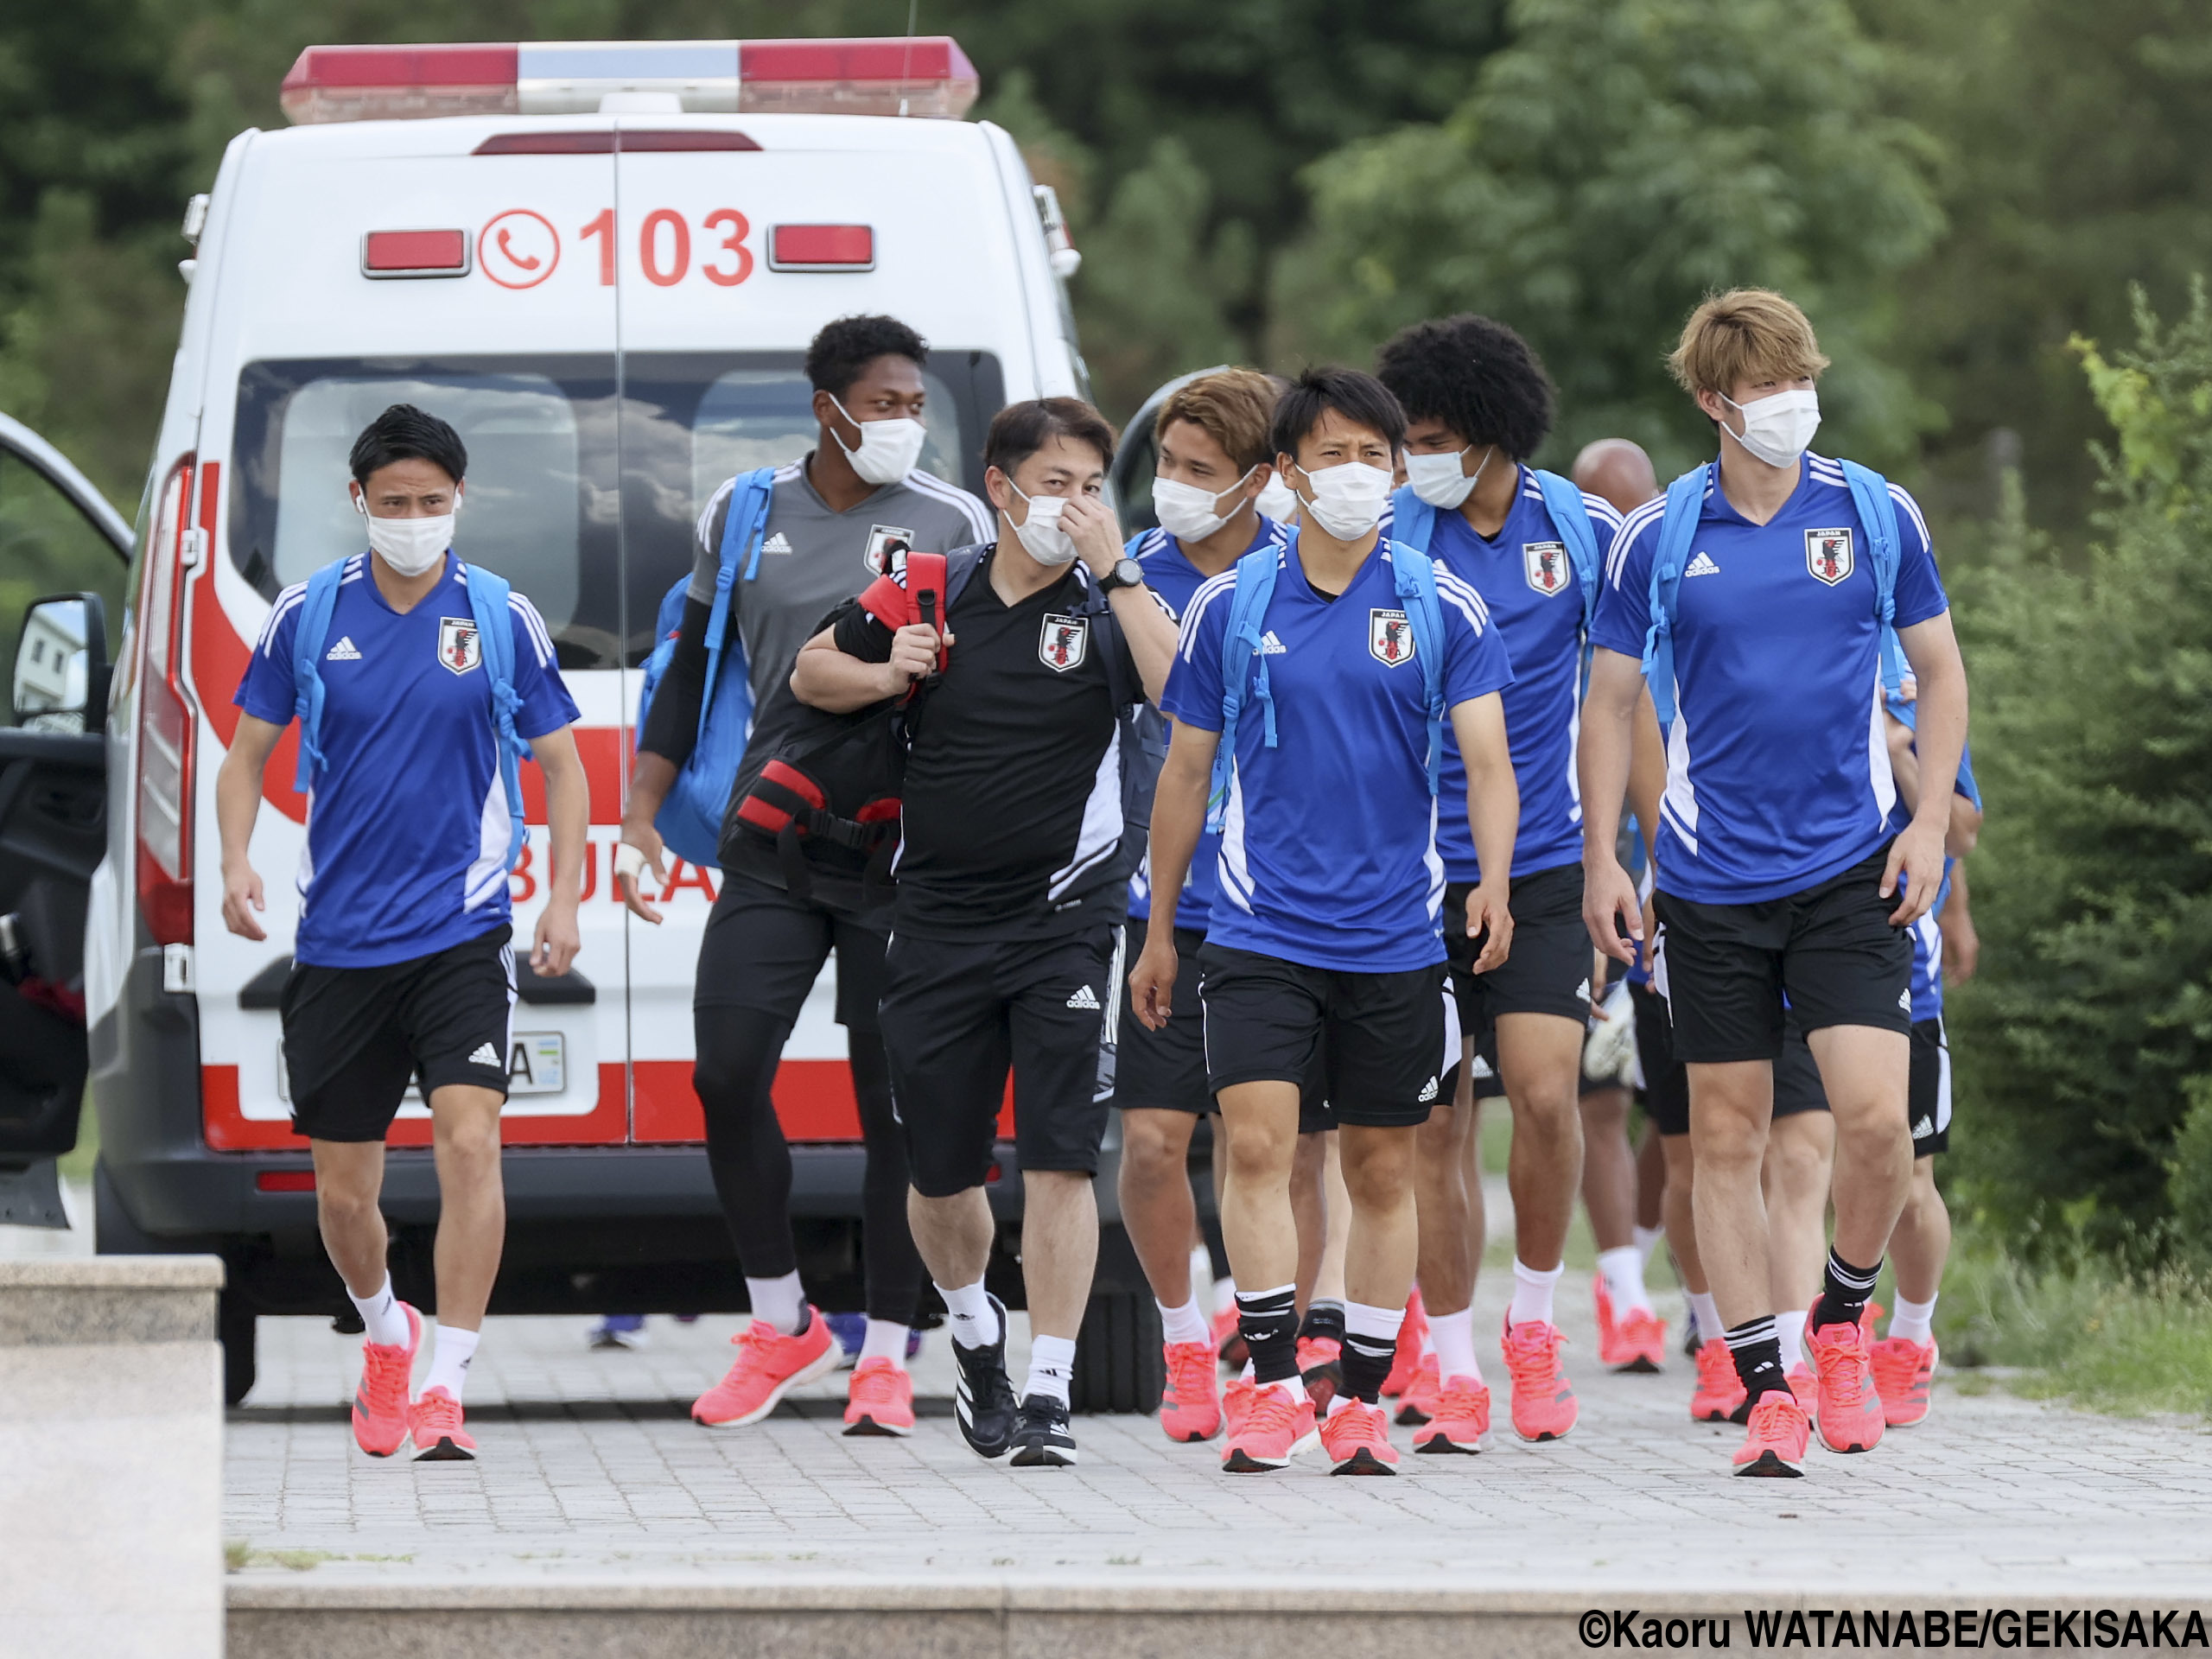 リフレッシュ明けの選手たちには笑顔も…U-21日本代表の練習行き&帰り(17枚)